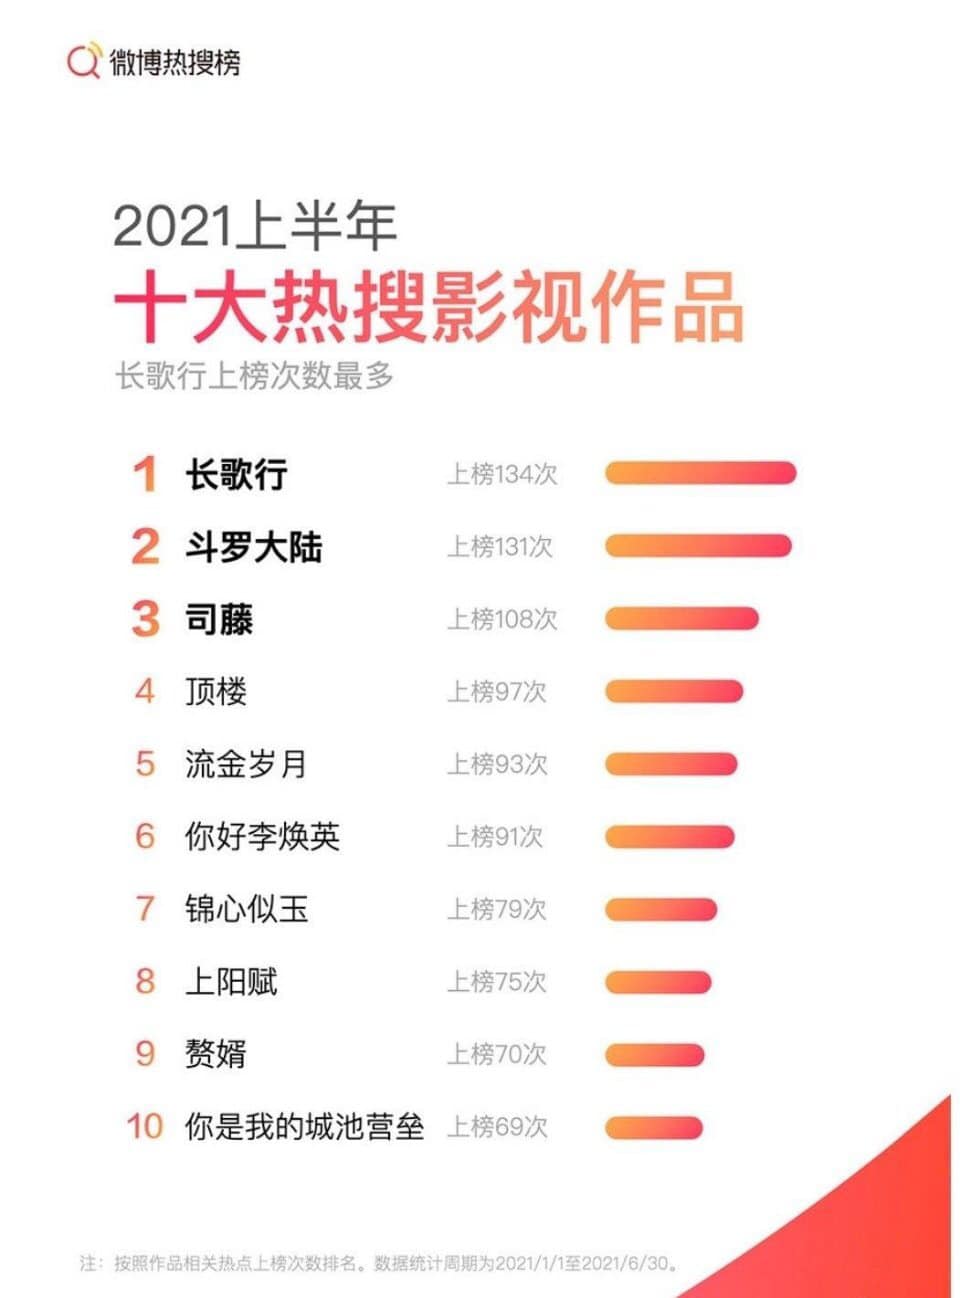 Thống kê về tìm kiếm hot trên Weibo trong nửa đầu năm 2021: Tu Chian, Natback giành được Big 5